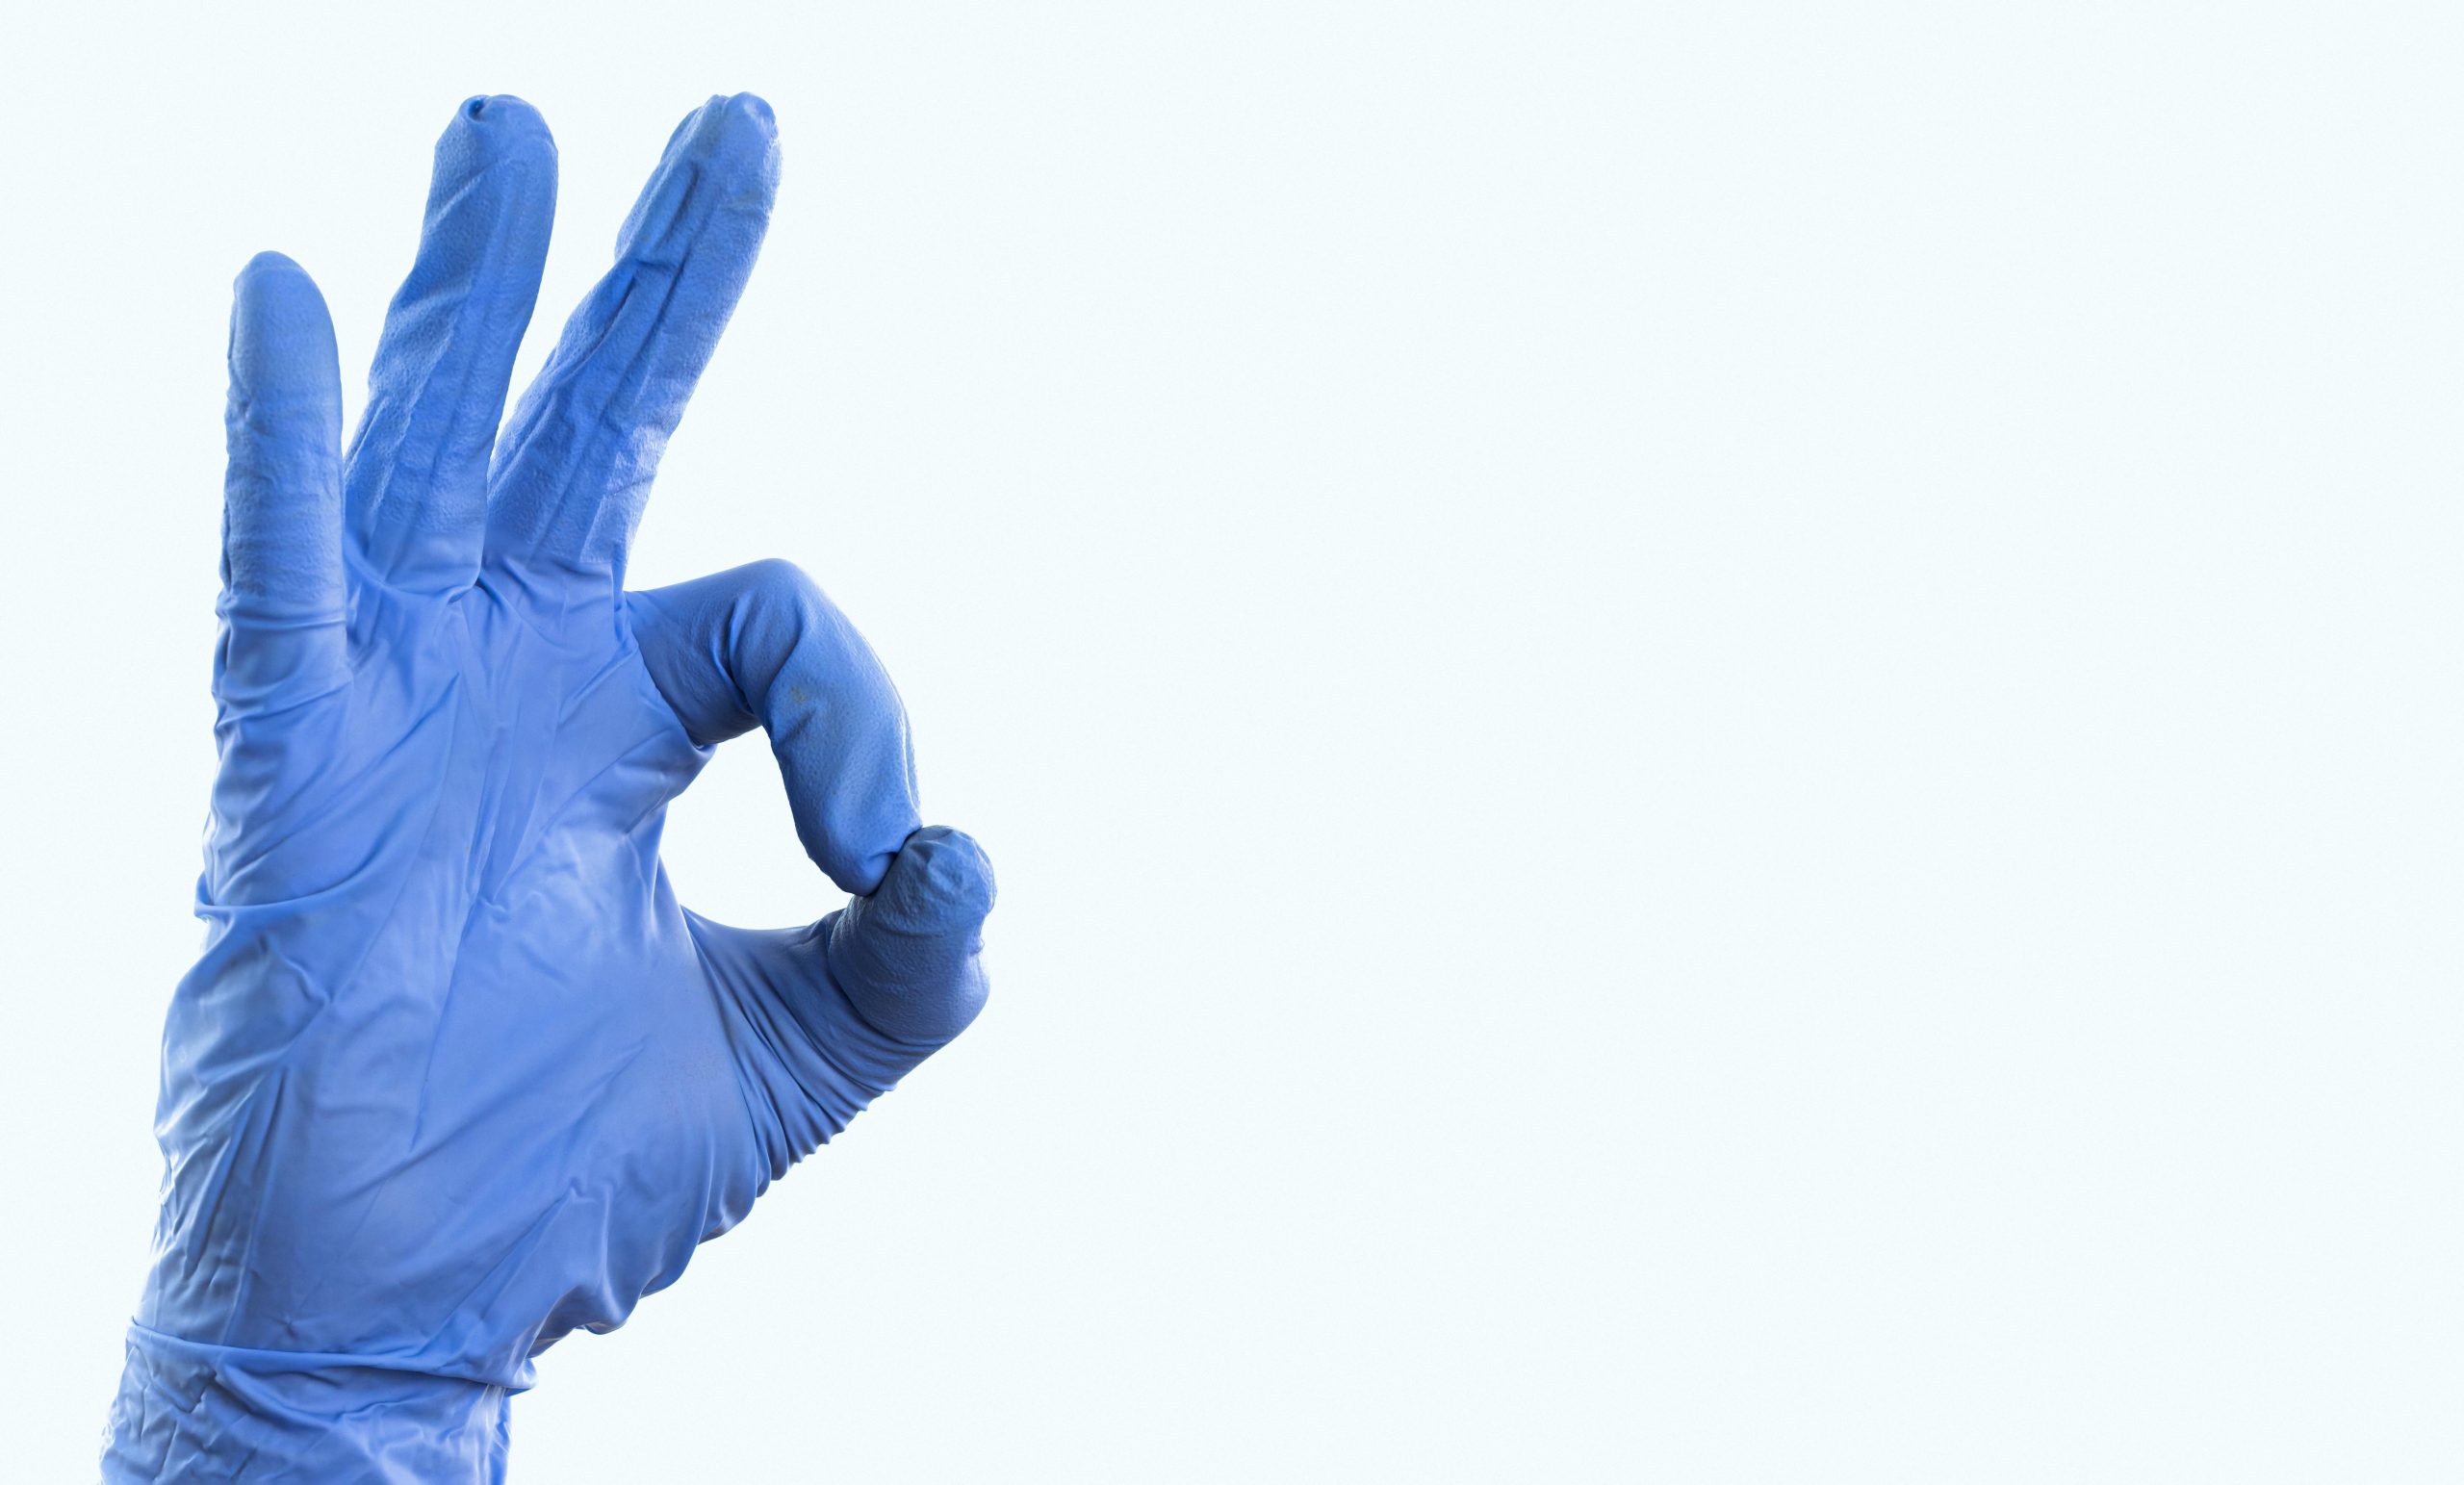 مواد سازنده دستکش یکبار مصرف چیست